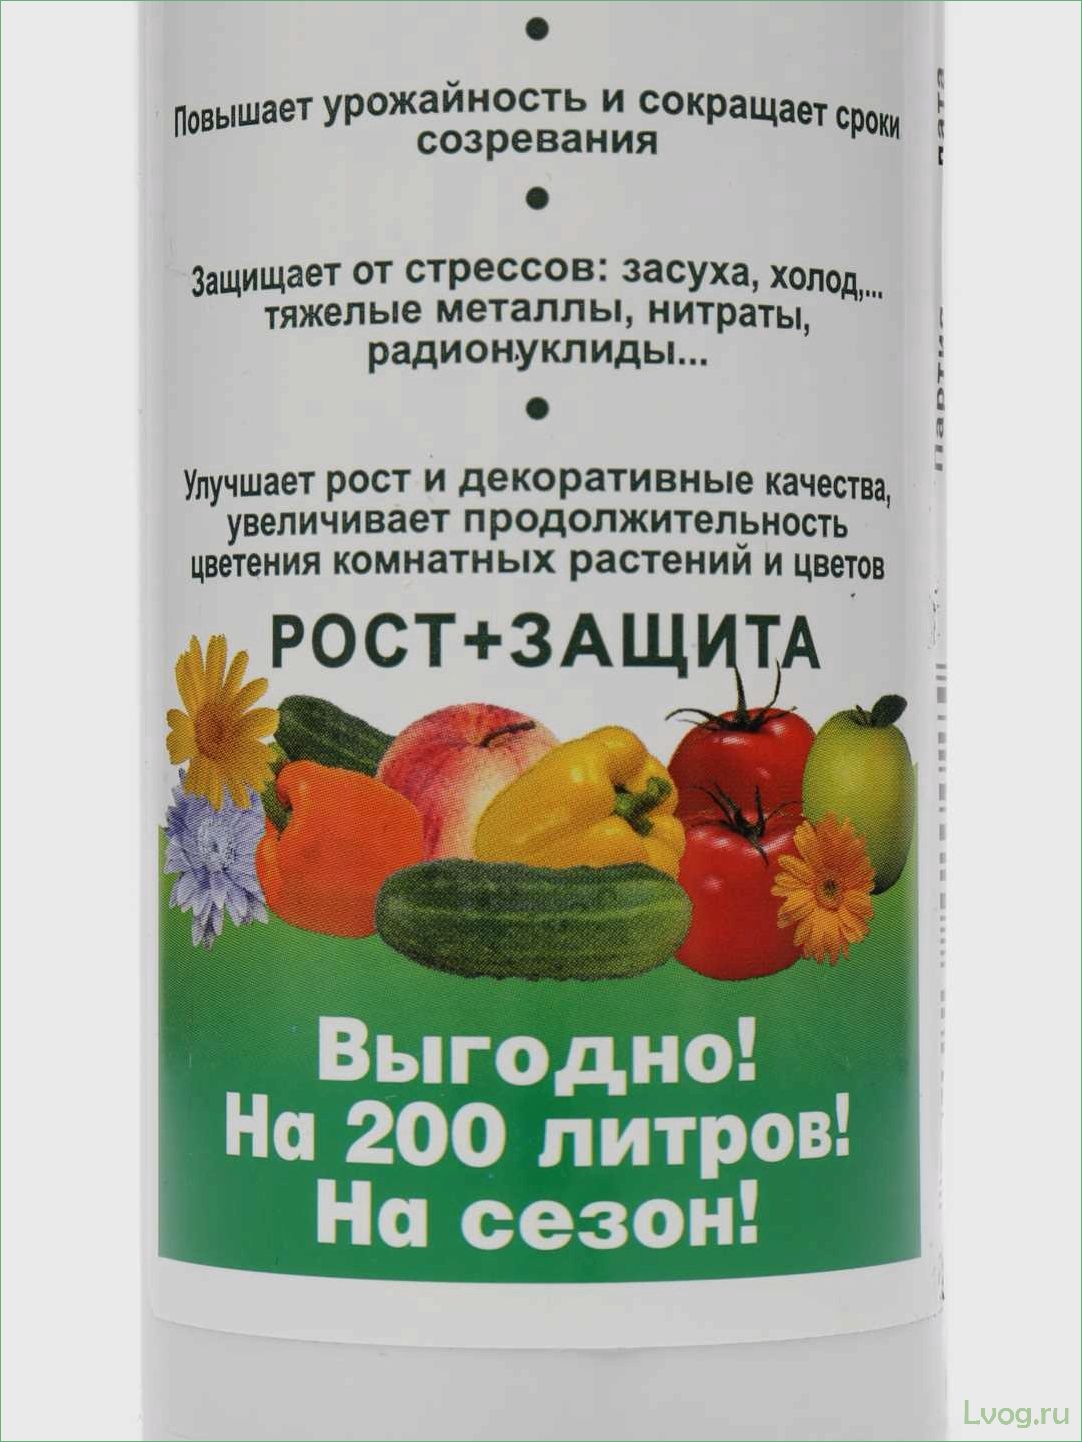 Удобрение Гуми Кузнецова (Гуми-20): универсальное средство для повышения урожайности